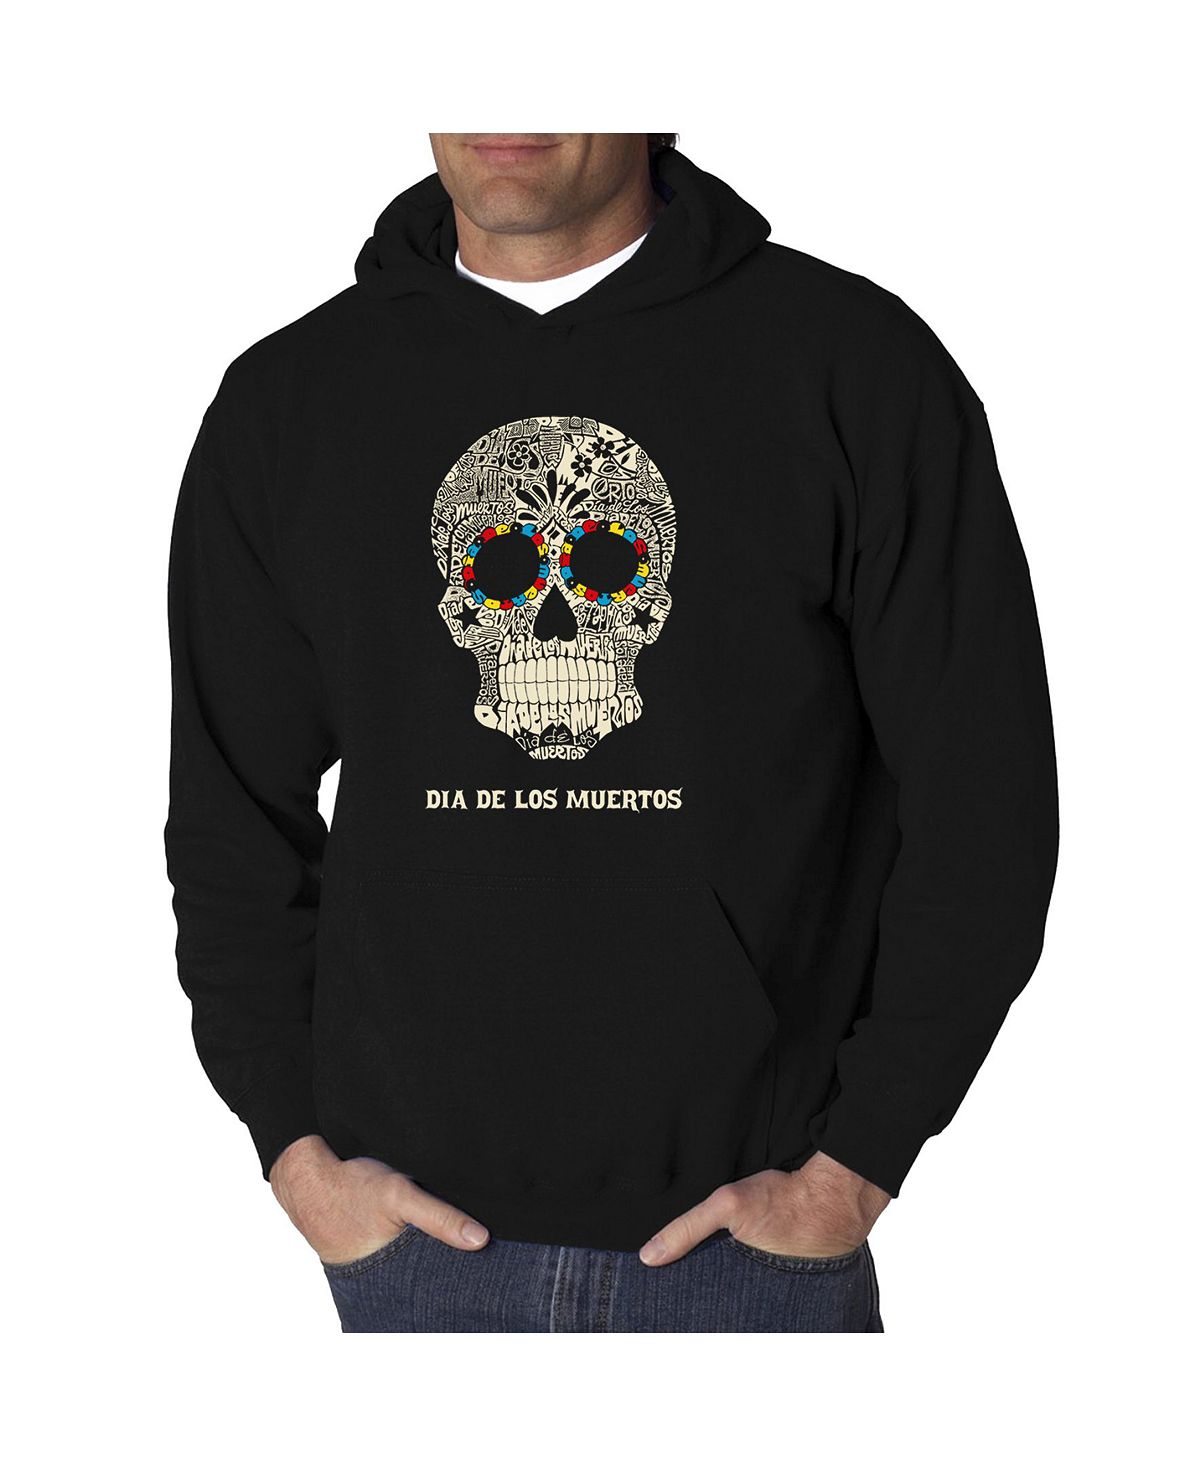 Мужская толстовка с капюшоном dia de los muertos word art LA Pop Art, черный мужская футболка сахарный череп с цветами l черный